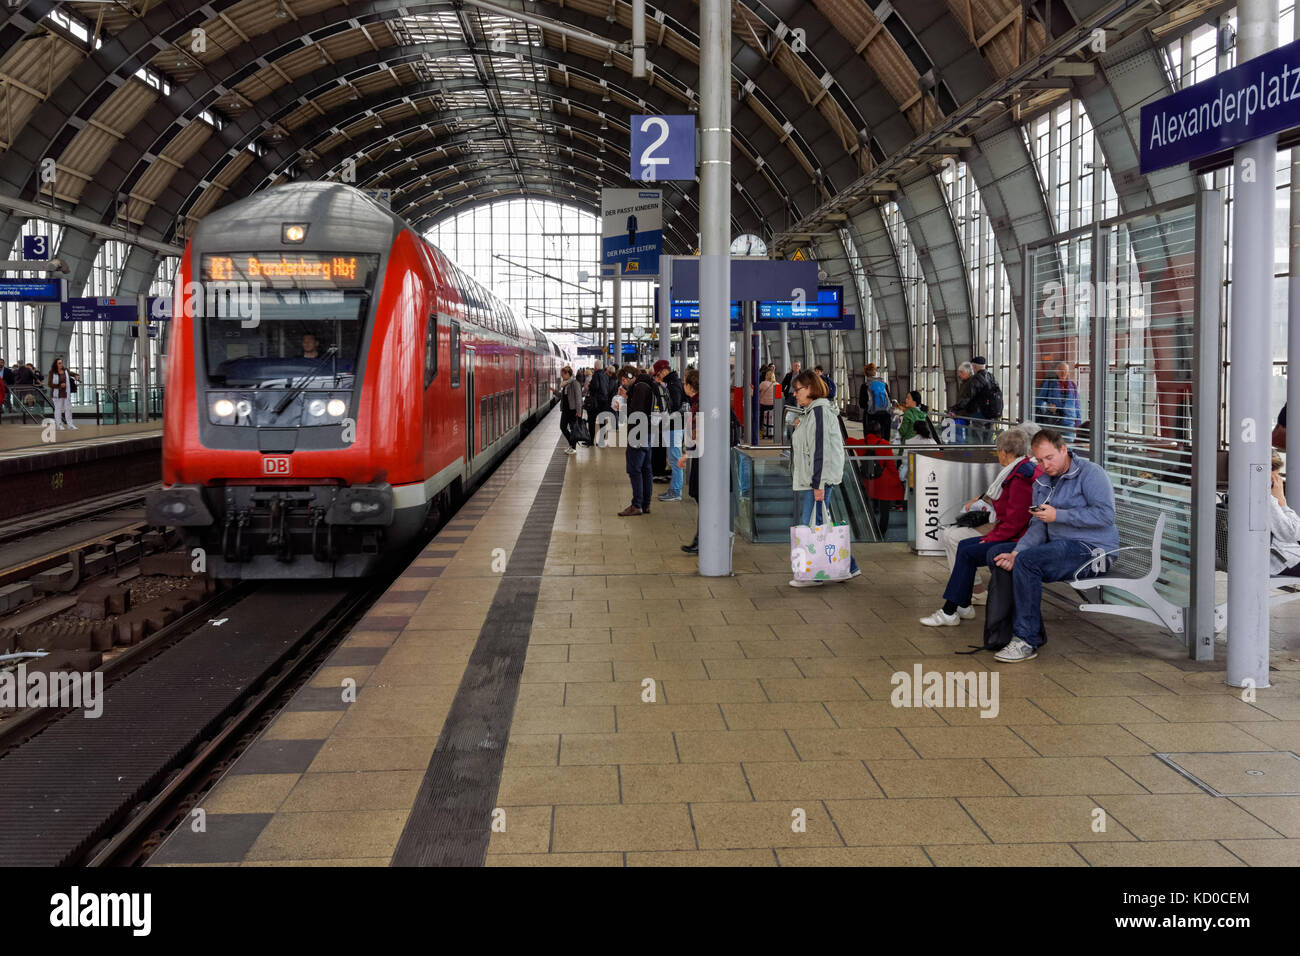 Les passagers sur la plate-forme à la station Alexanderplatz à Berlin, Allemagne Banque D'Images